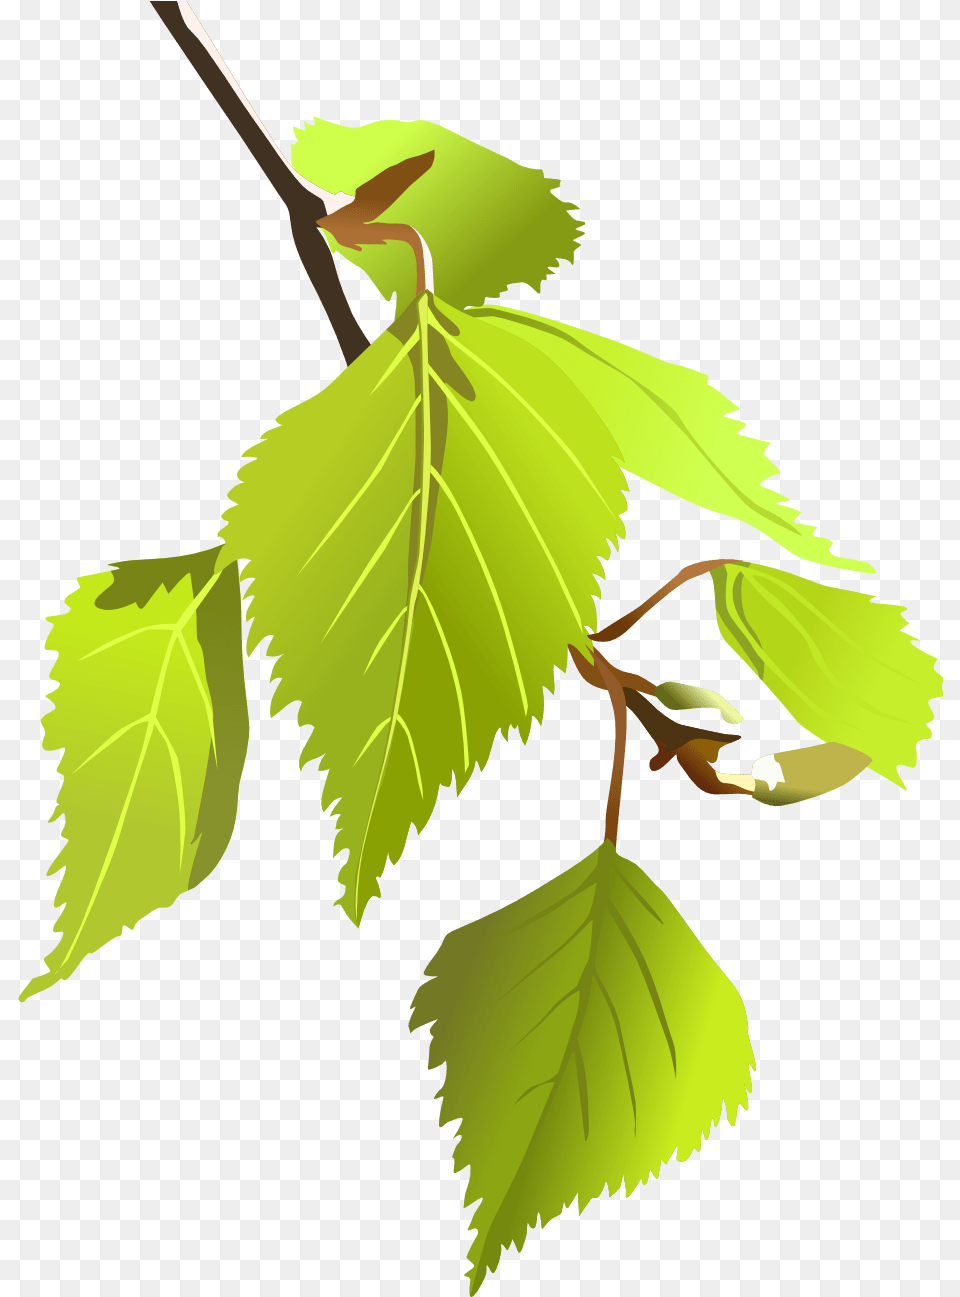 Najpopularniejsze Drzewa W Polsce, Leaf, Plant, Tree, Herbal Png Image